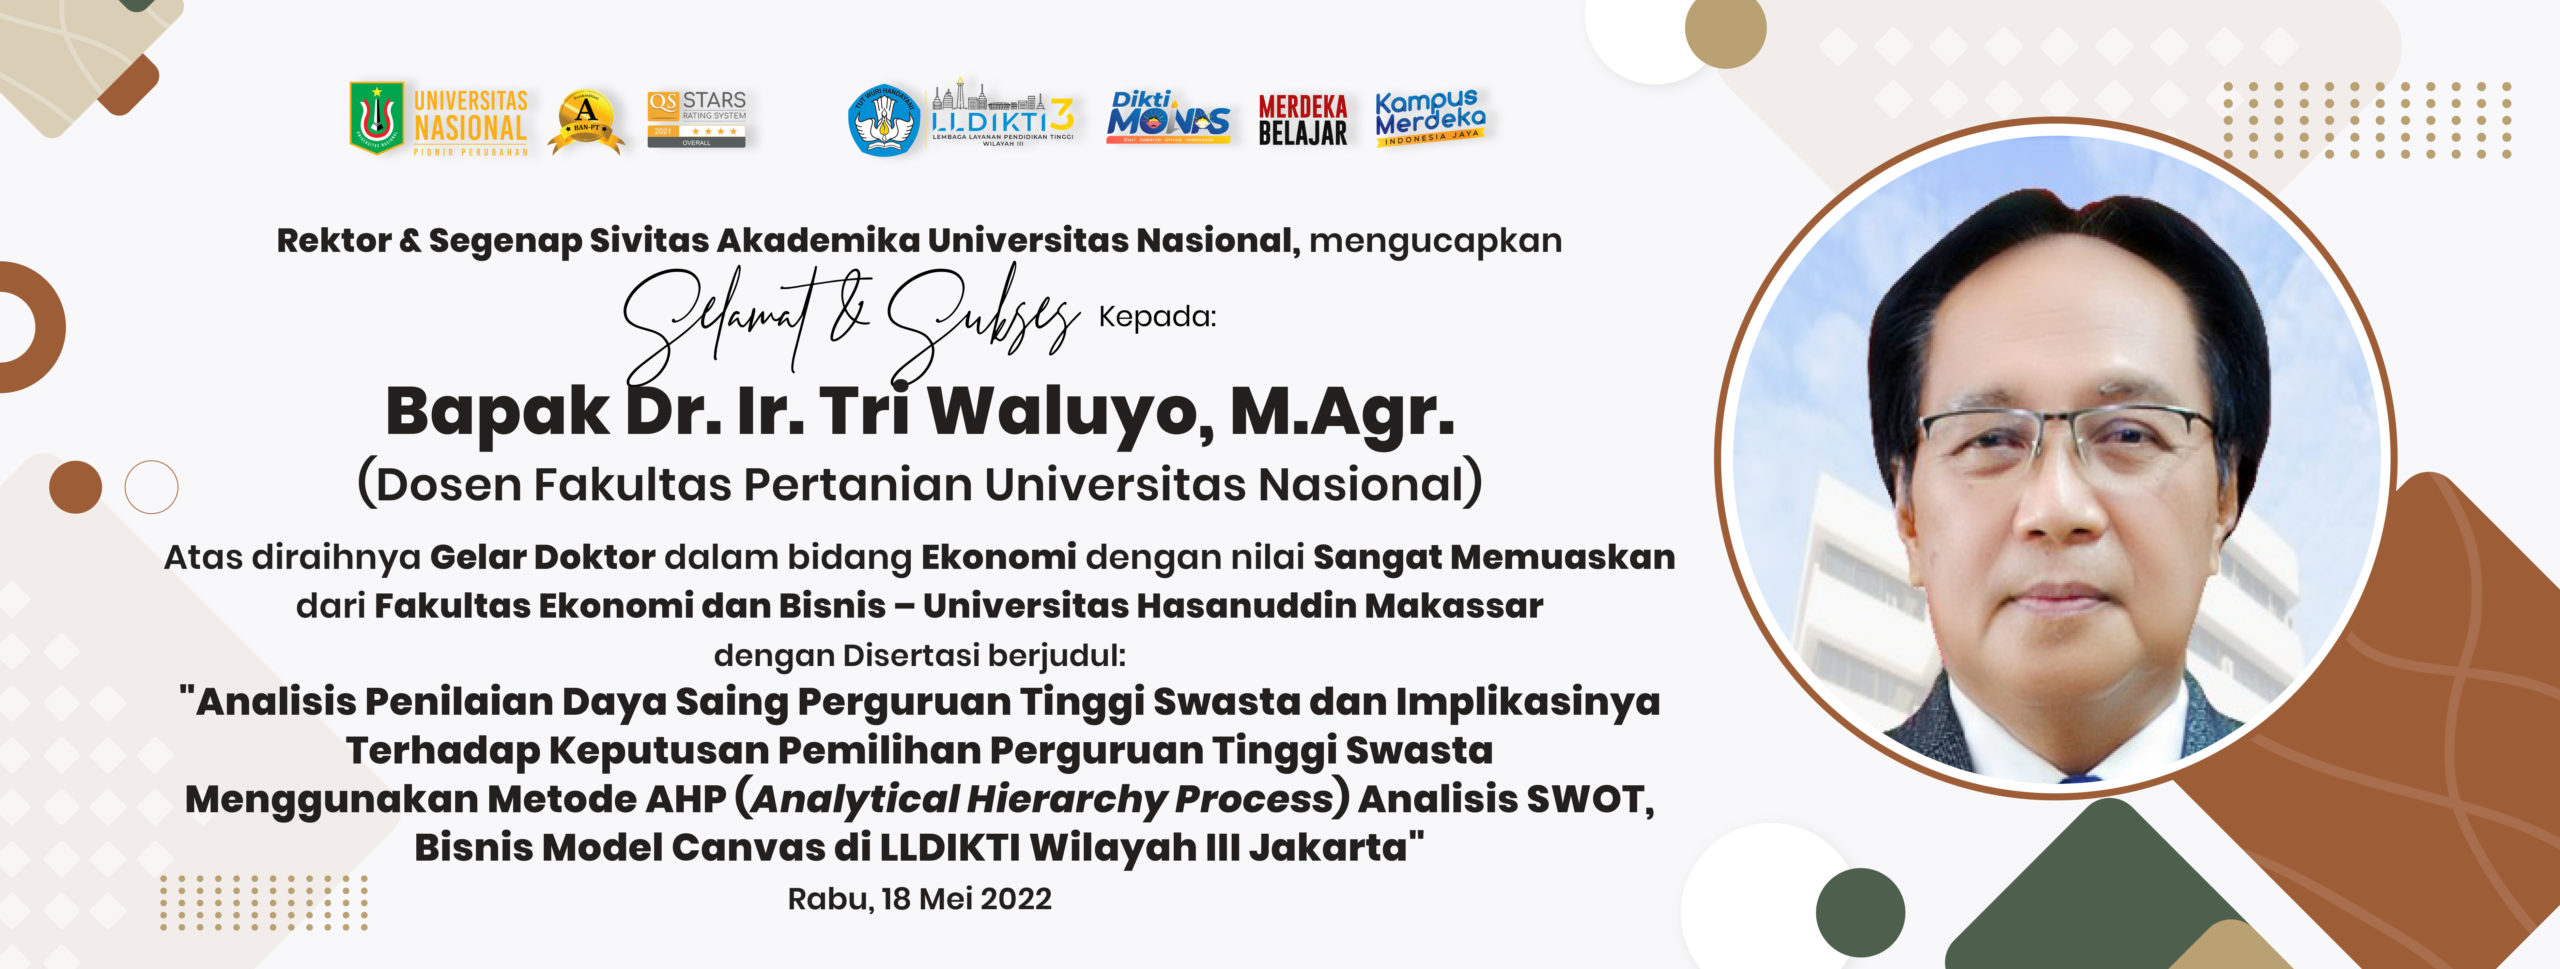 Selamat & Sukses Kepada: Bapak Dr. Ir. Tri Waluyo, M.Agr. (Dosen Fakultas Pertanian Universitas Nasional) Atas diraihnya Gelar Doktor dalam bidang Ekonomi